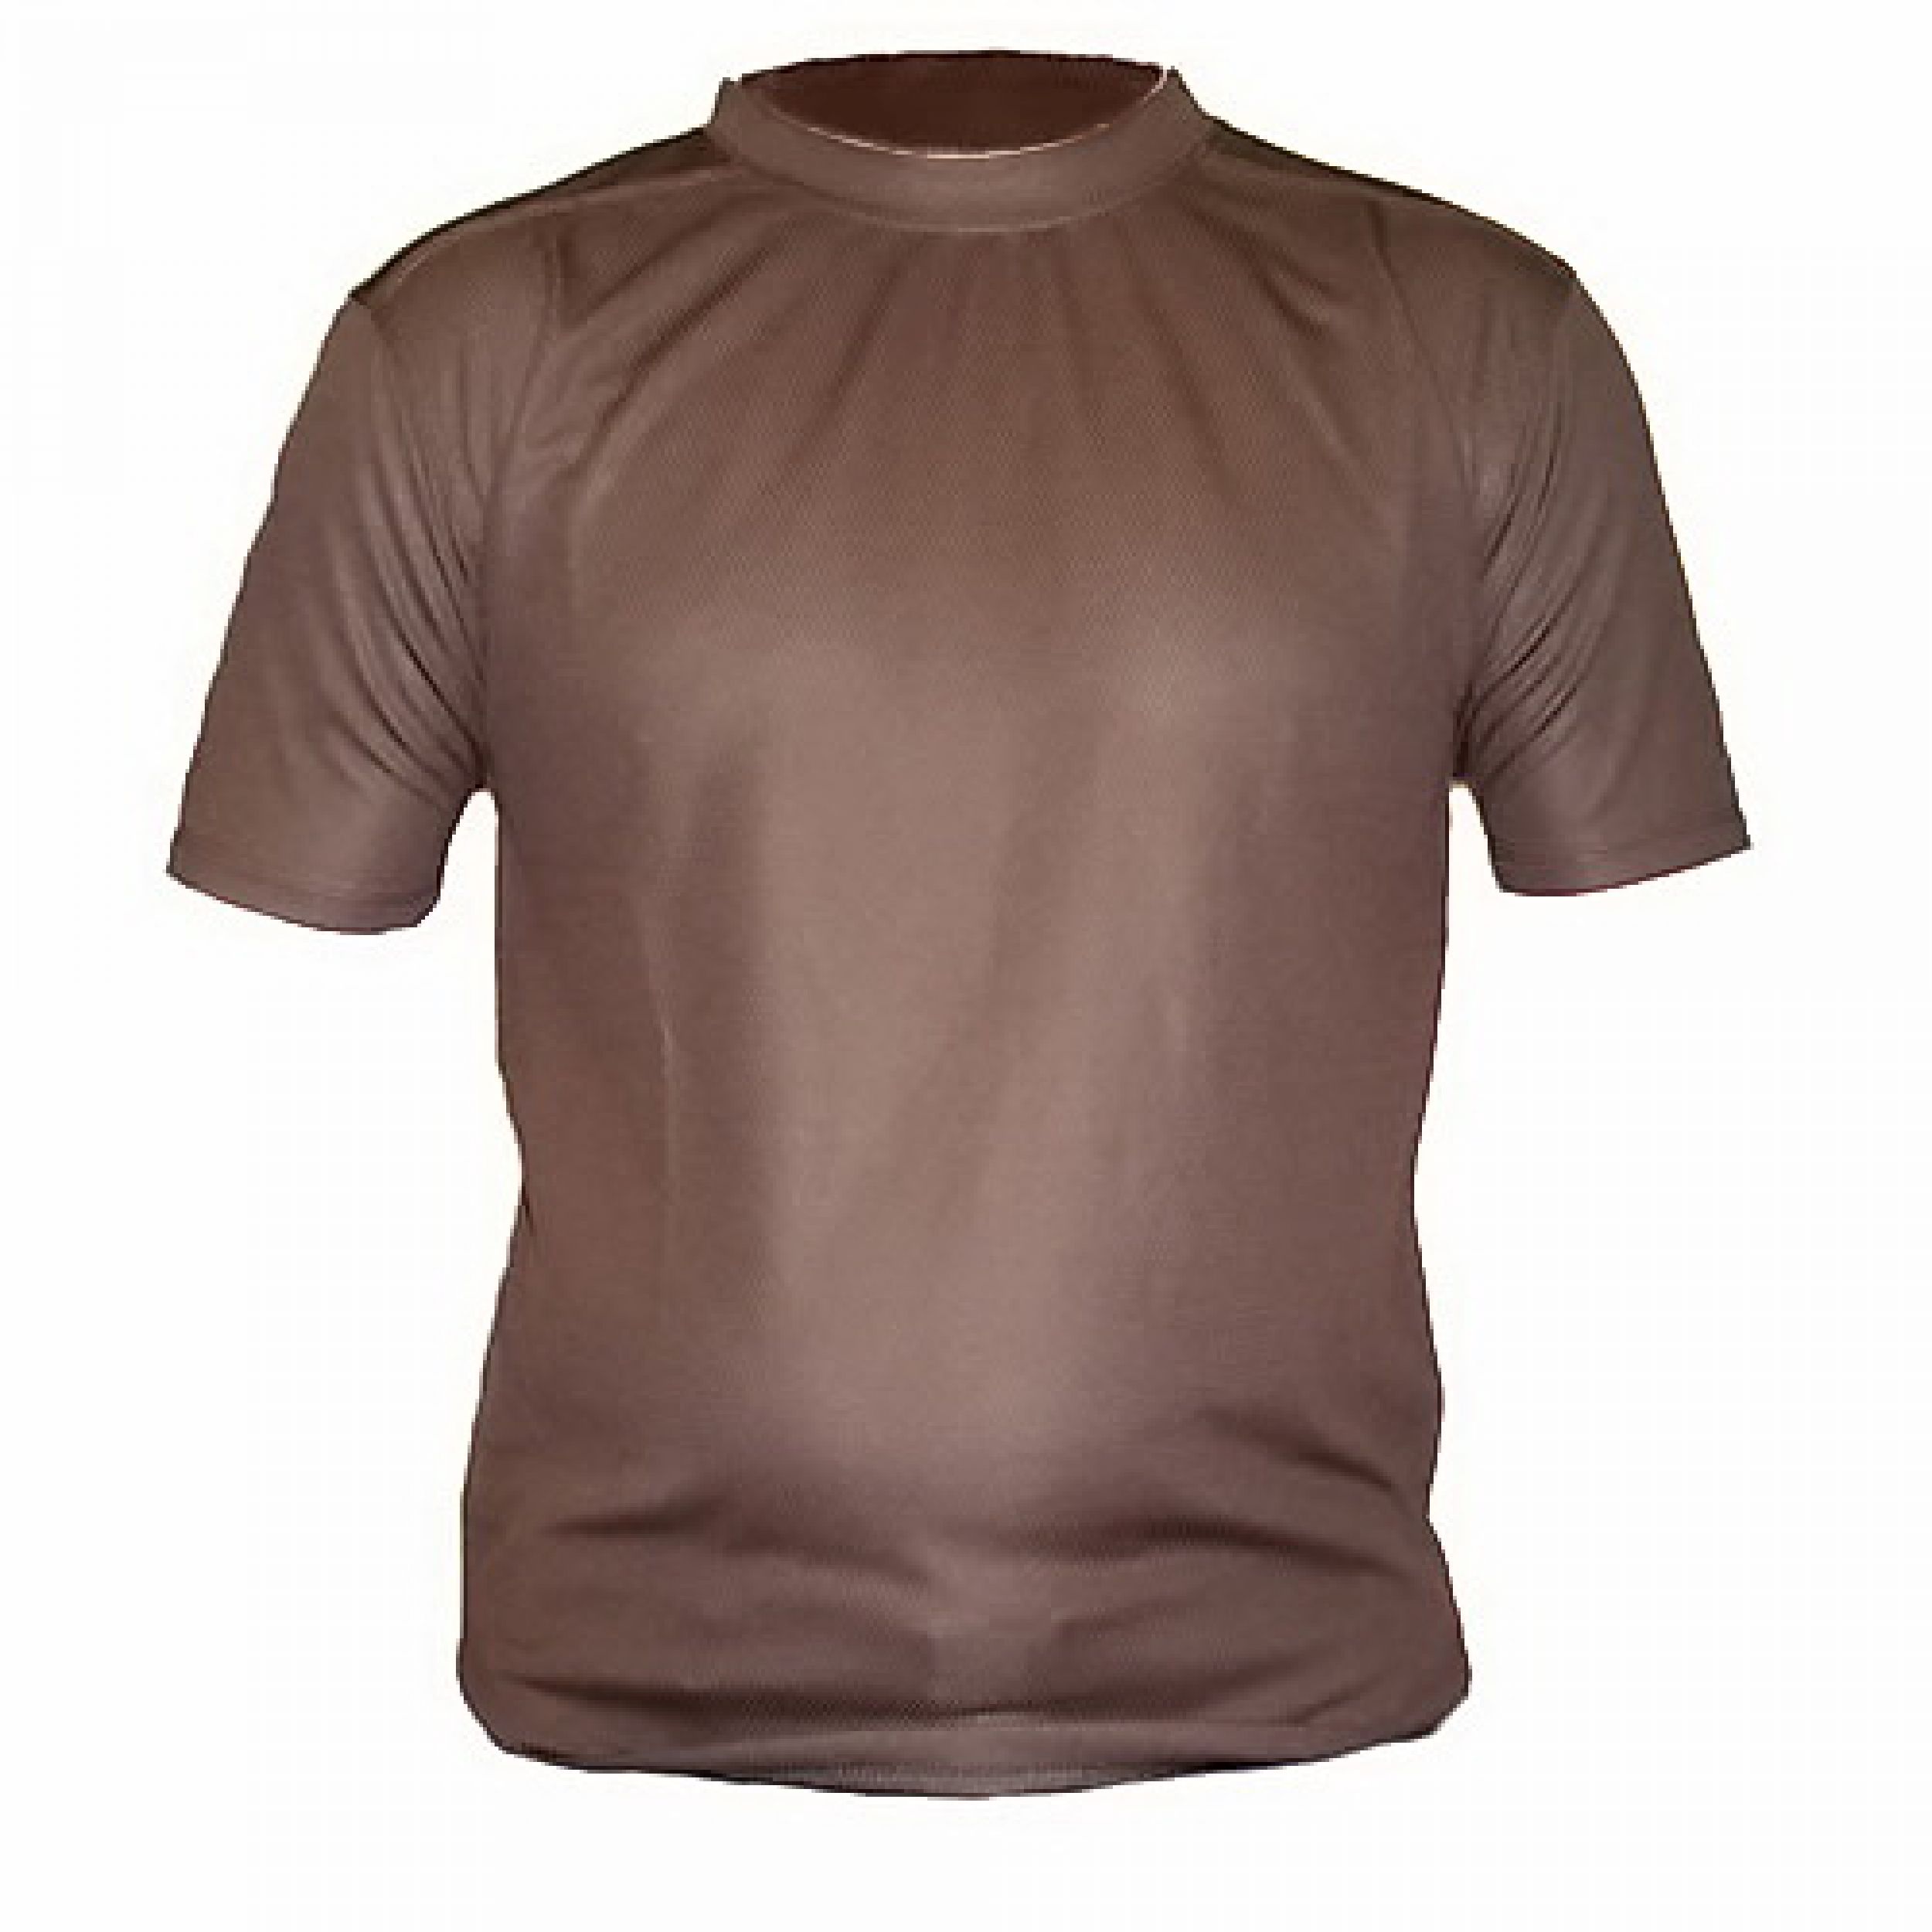 coolmax-tshirt-brown-lge_2.jpg